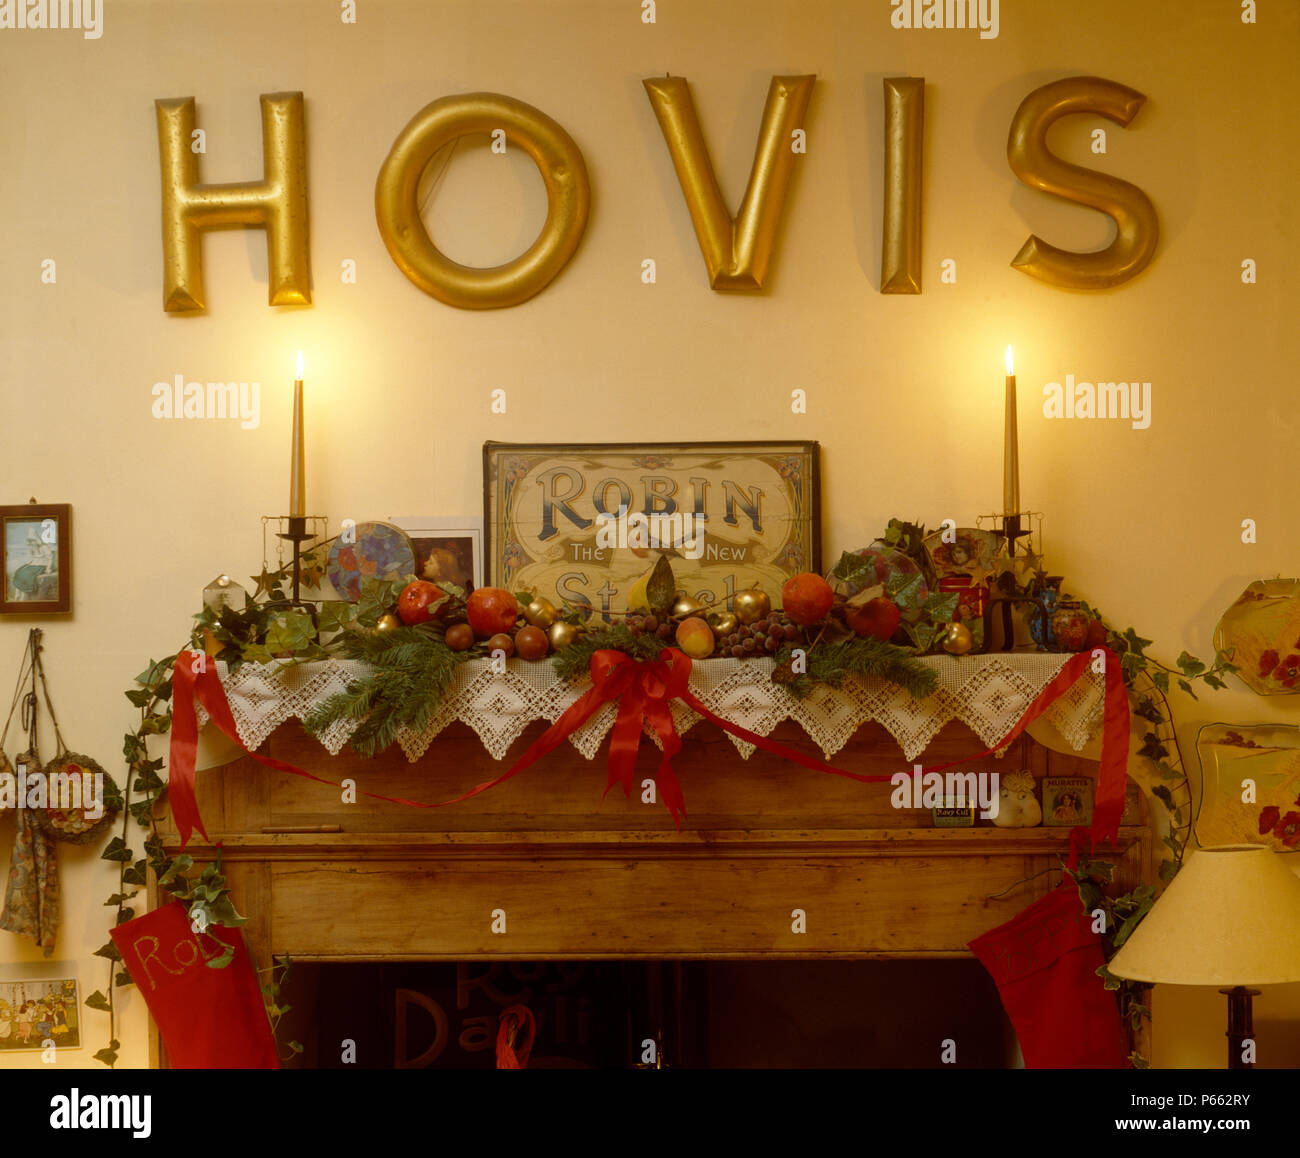 Scrofetta Hovis ha segno sopra mantelpiece decorato per il Natale di edera e di conifere garland sul panno di pizzo Foto Stock